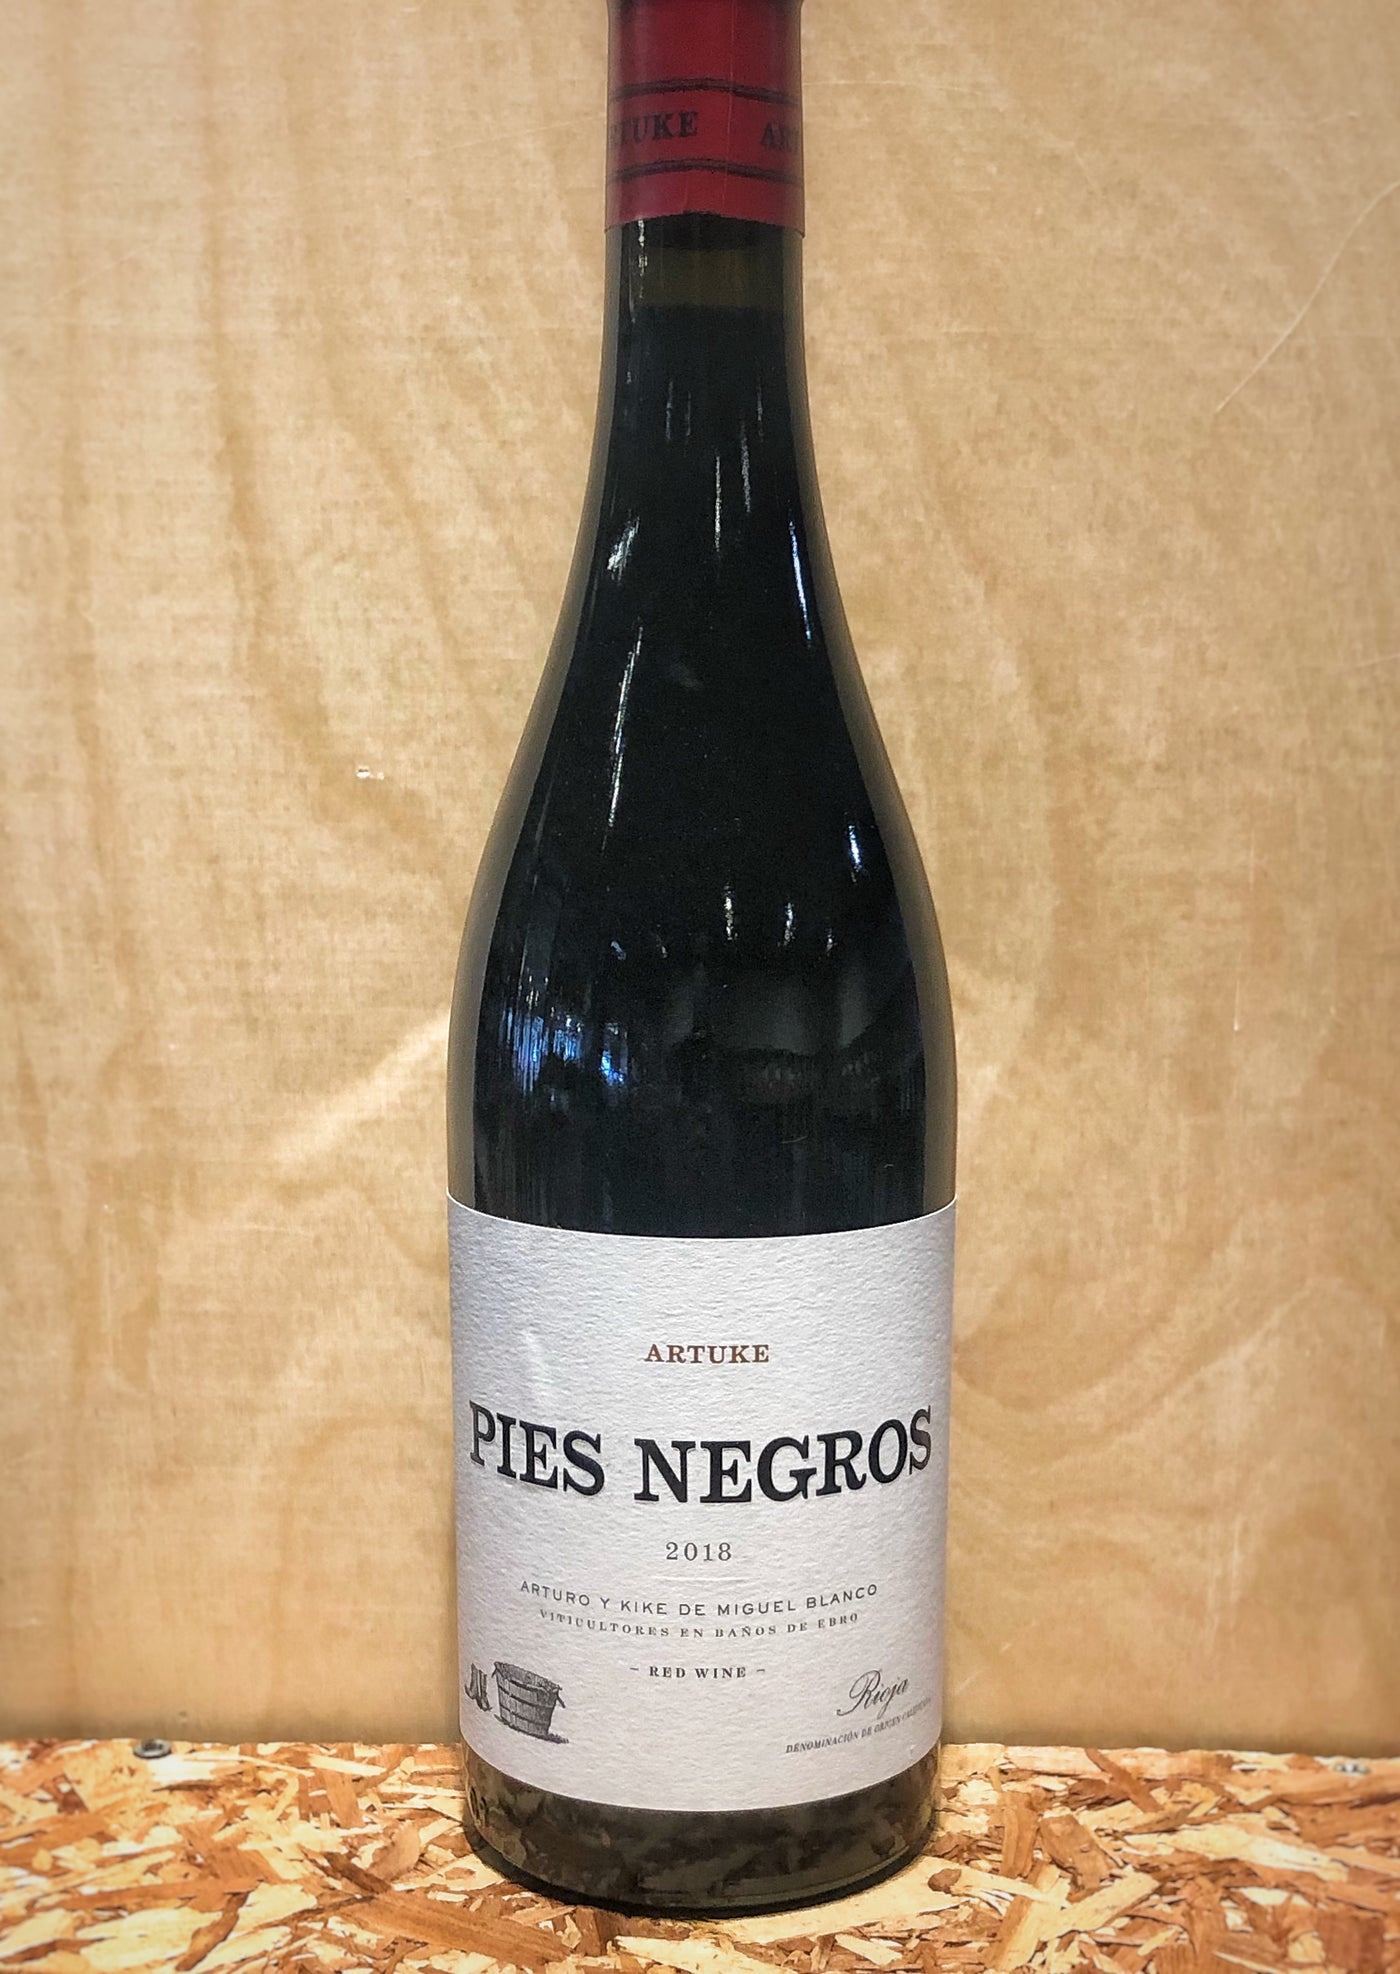 Artuke 'Pies Negros' 2018 (Rioja, Spain)